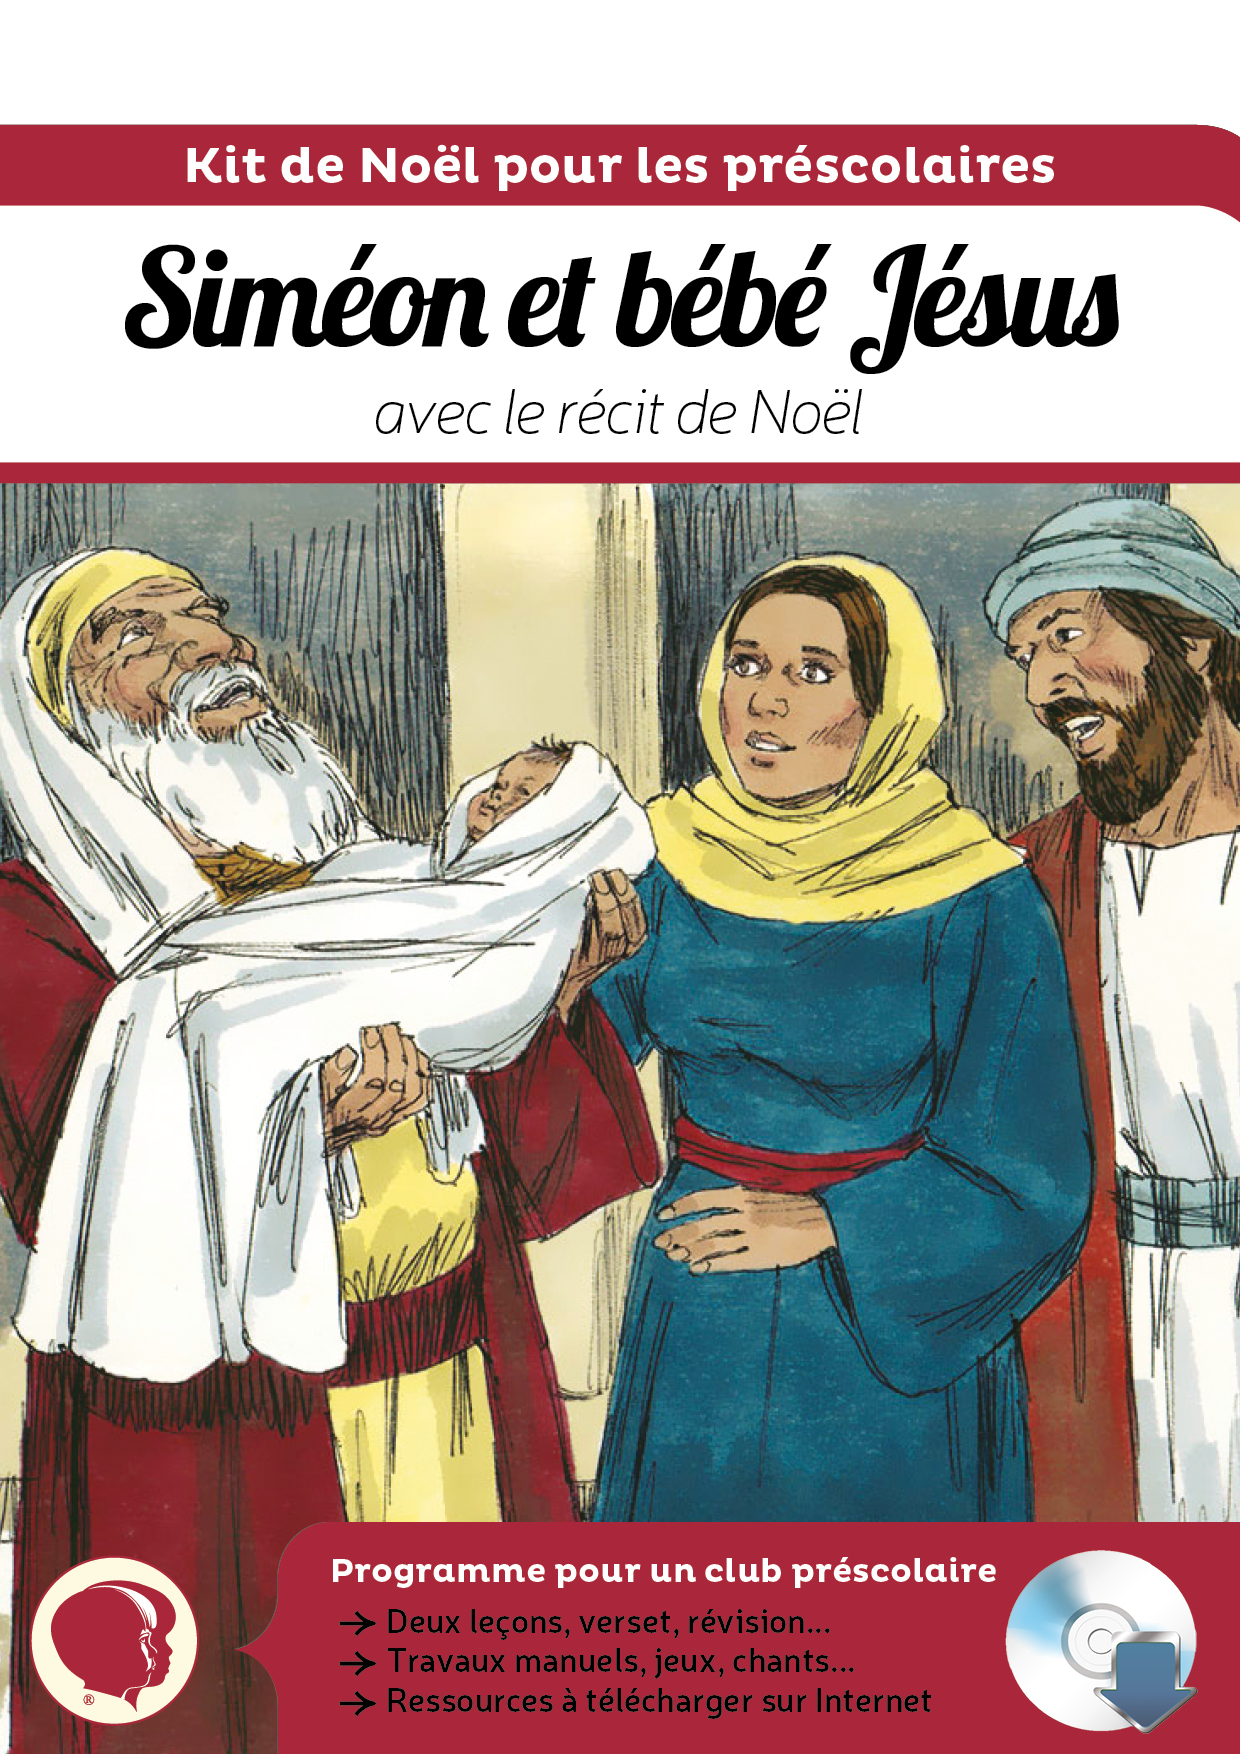 Kit de Noël - Siméon et bébé Jésus